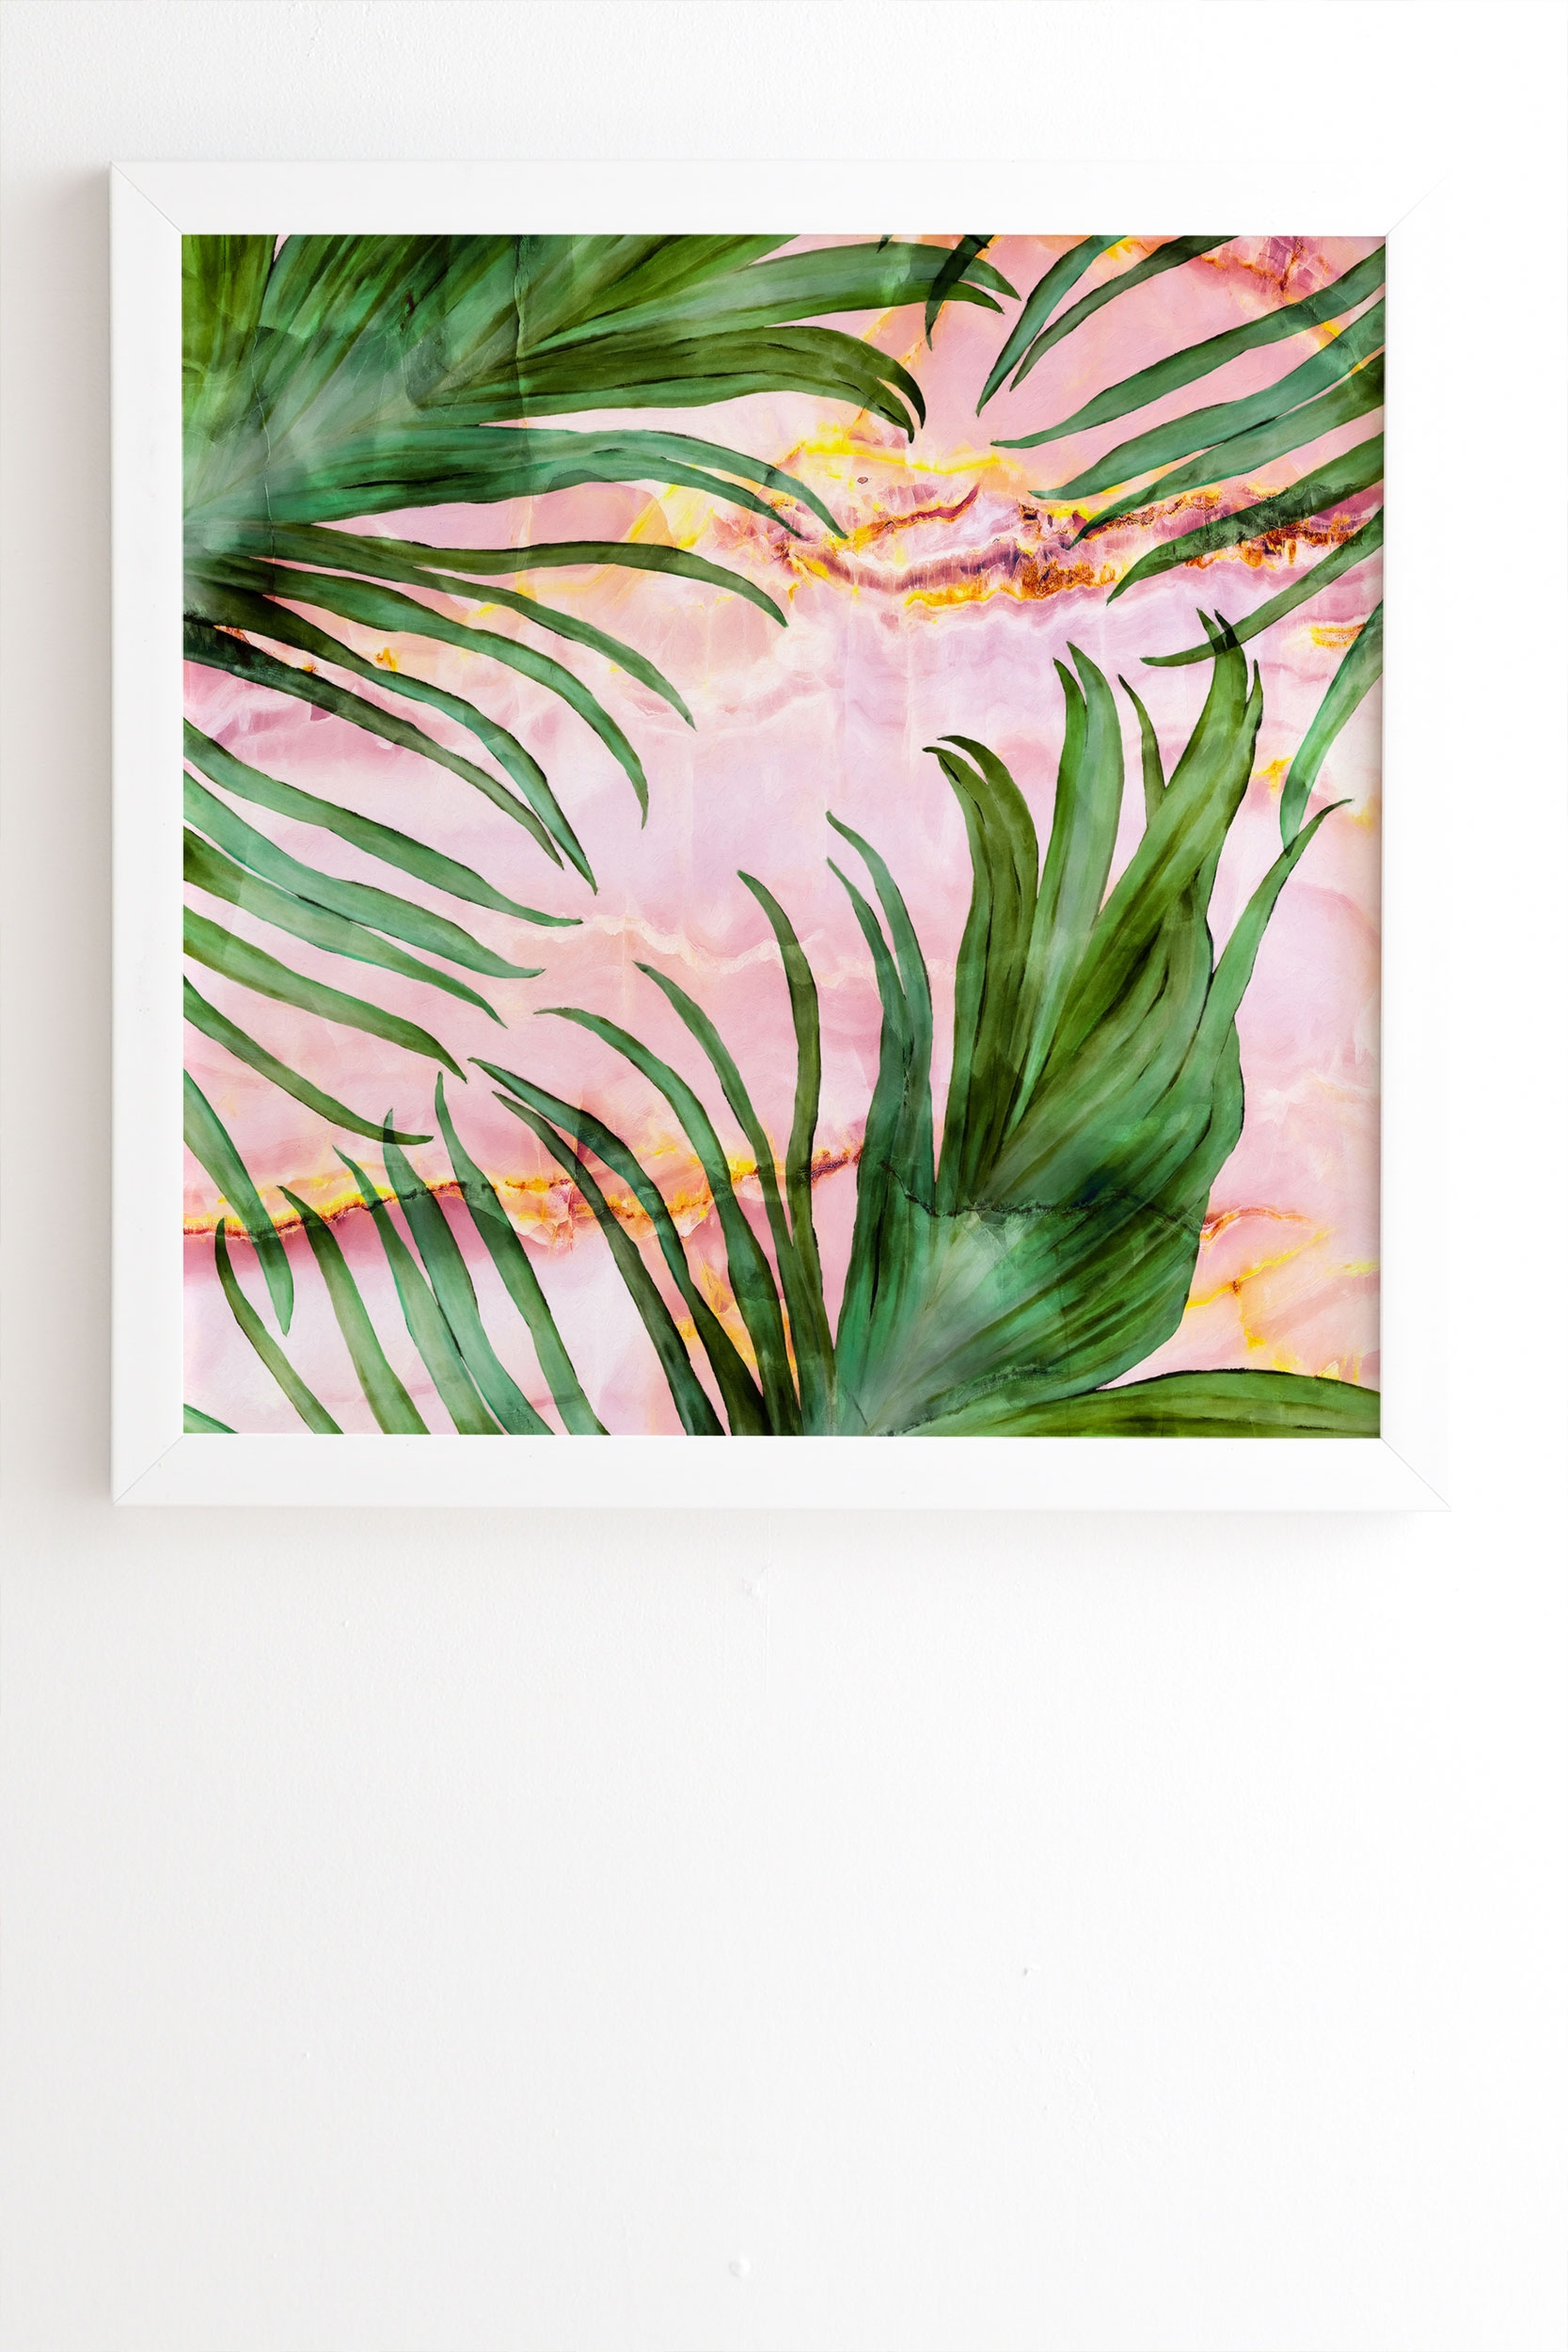 Palm Leaf On Marble 01 by Marta Barragan Camarasa - Framed Wall Art Basic White 8" x 9.5" - Image 1